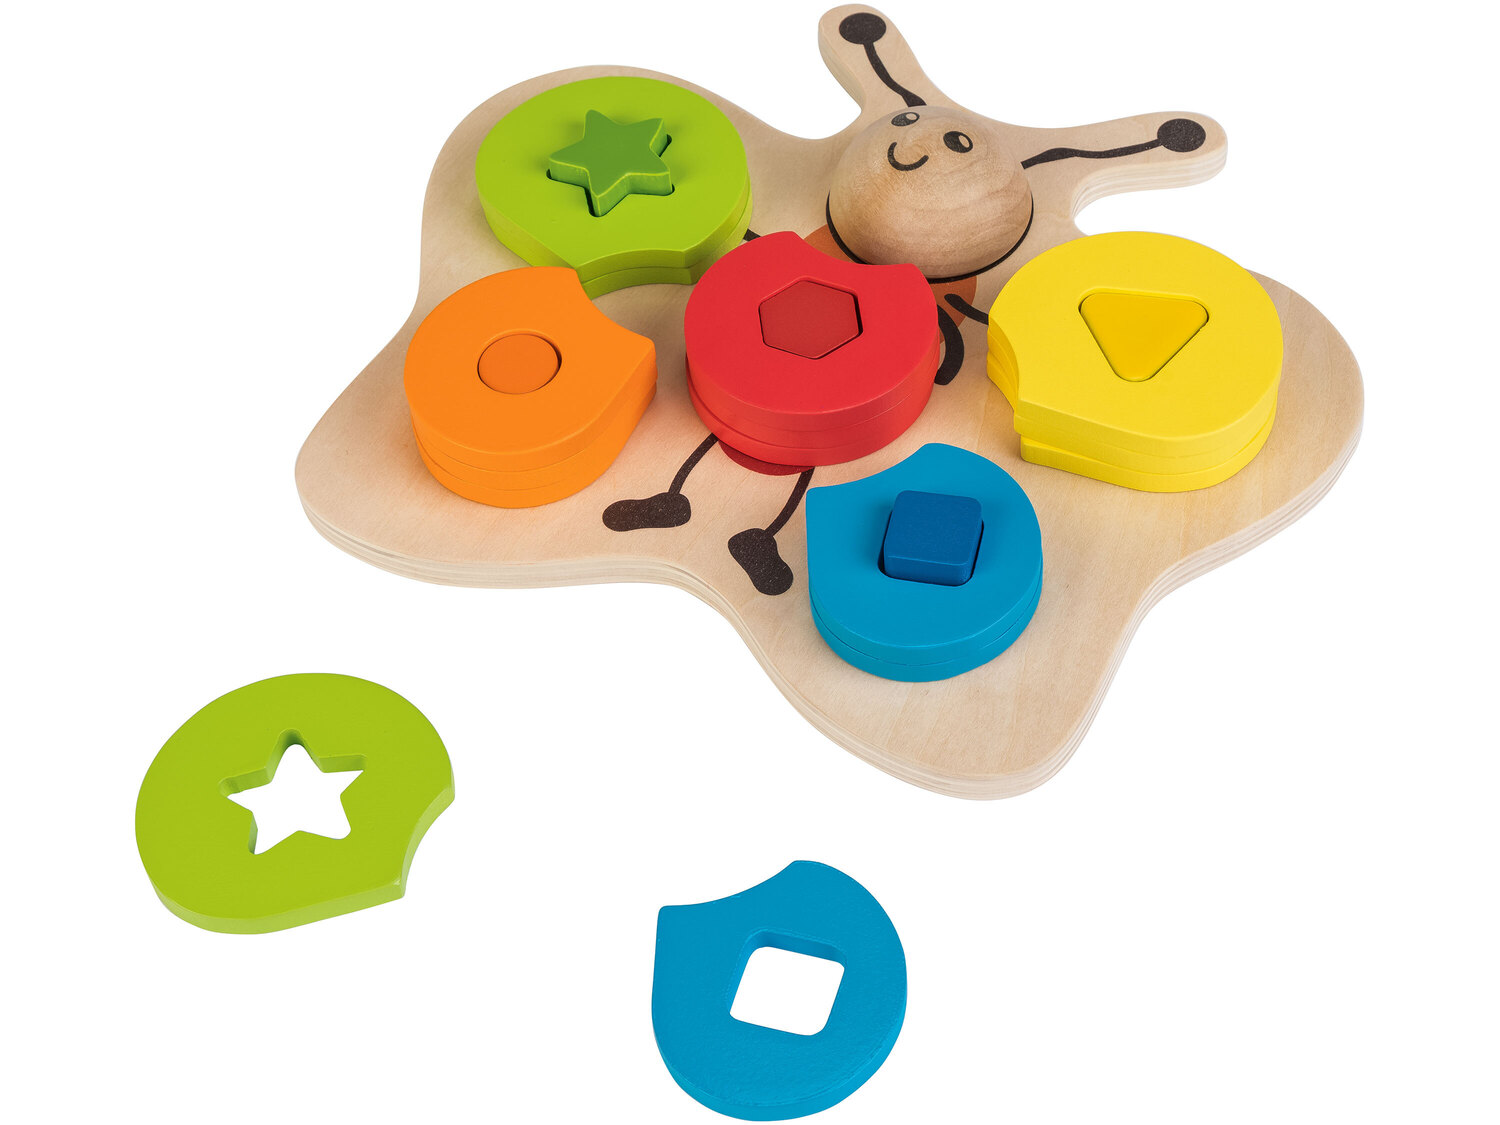 Drewniana zabawka Playtive Junior, cena 29,99 PLN 
5 zestawów do wyboru 
- 5 zestaw&oacute;w ...